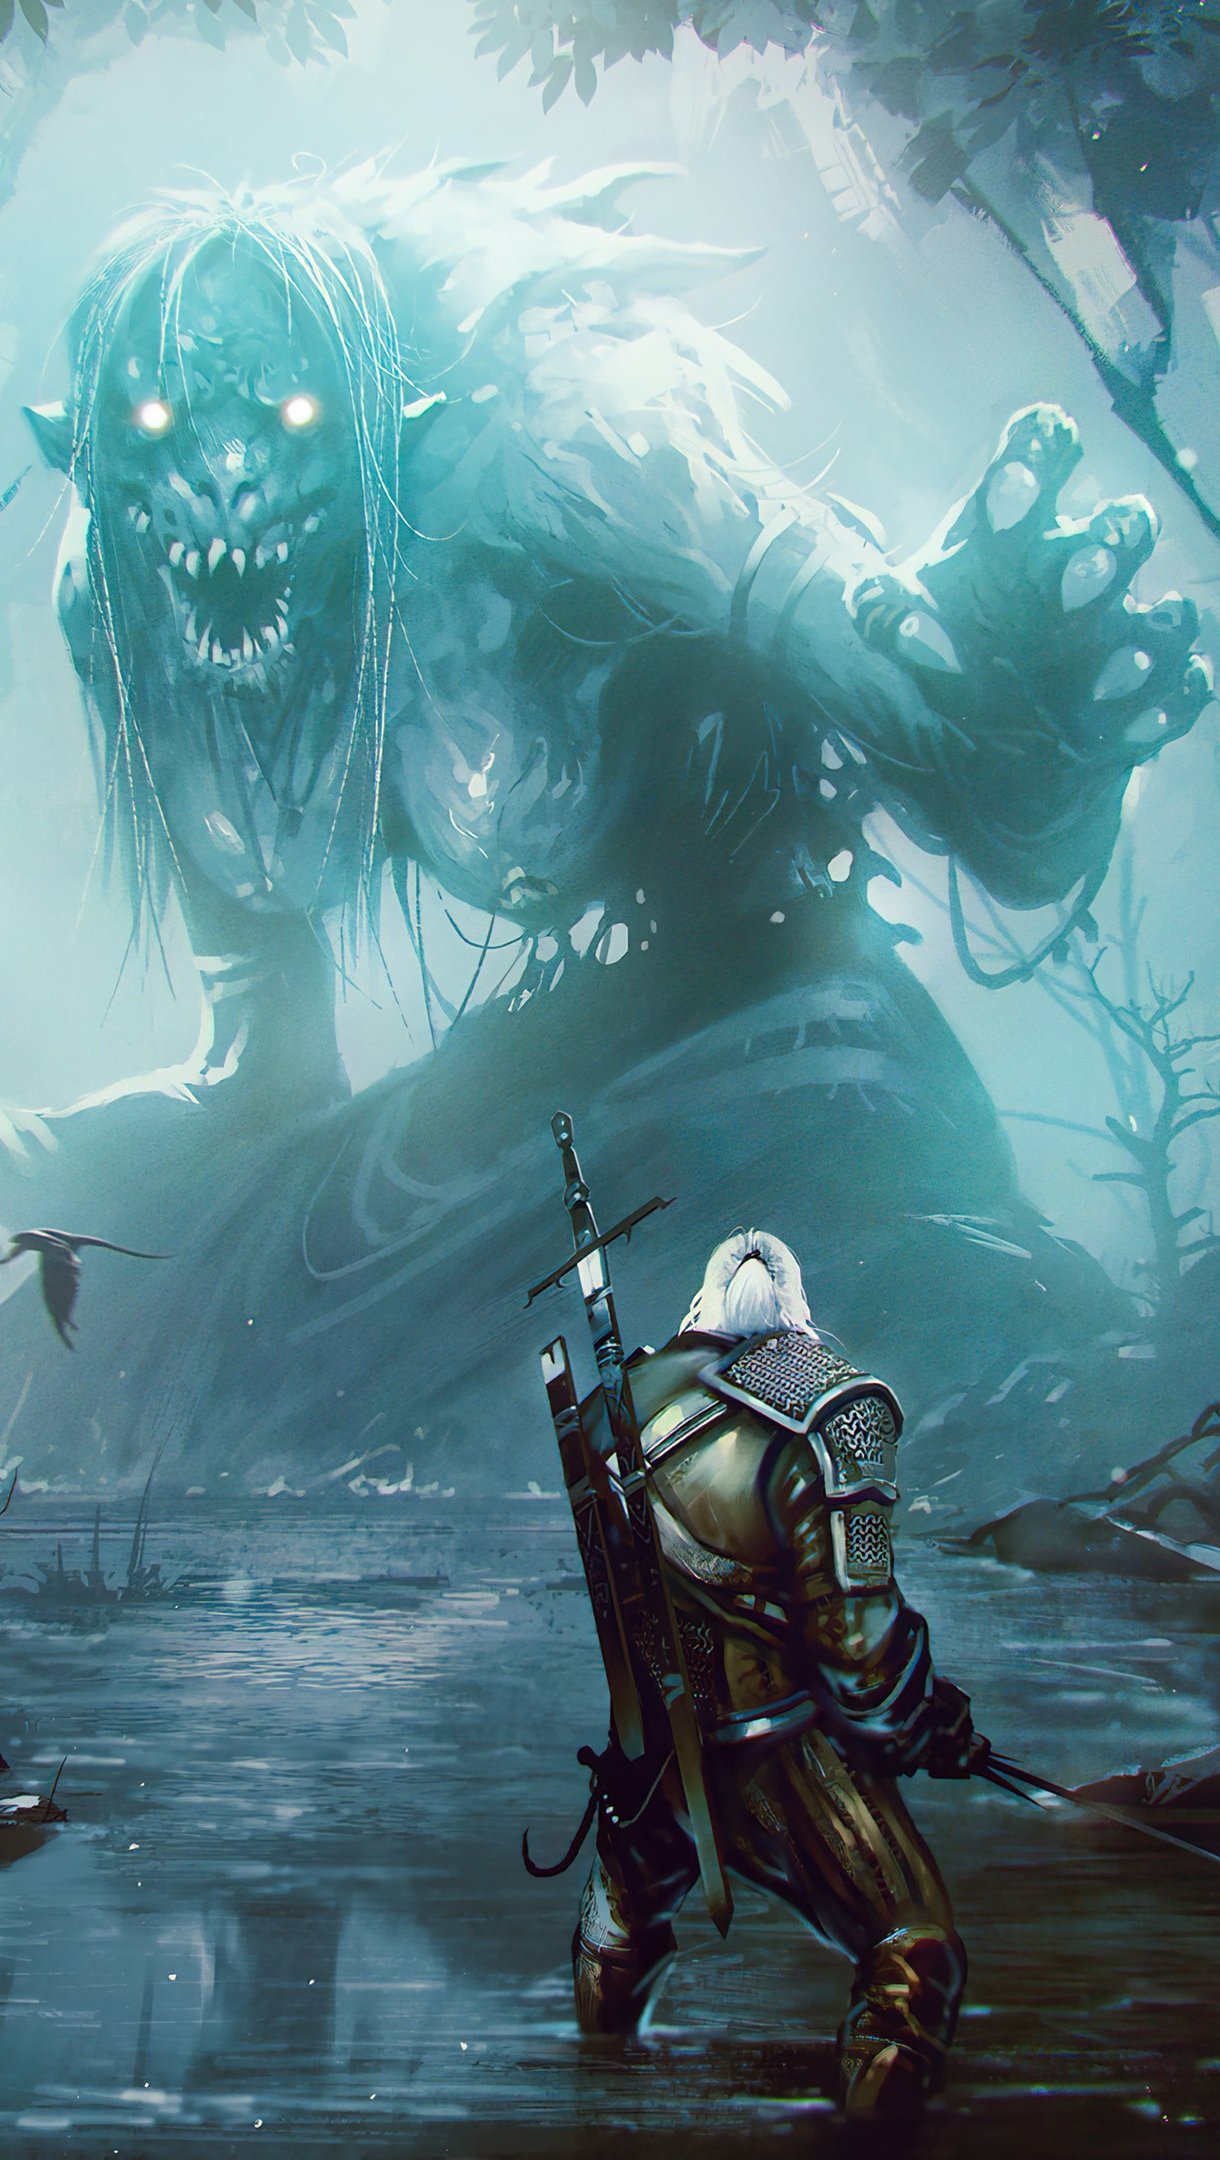 Fondos de pantalla The Witcher Geralt of Rivia con monstruo Vertical